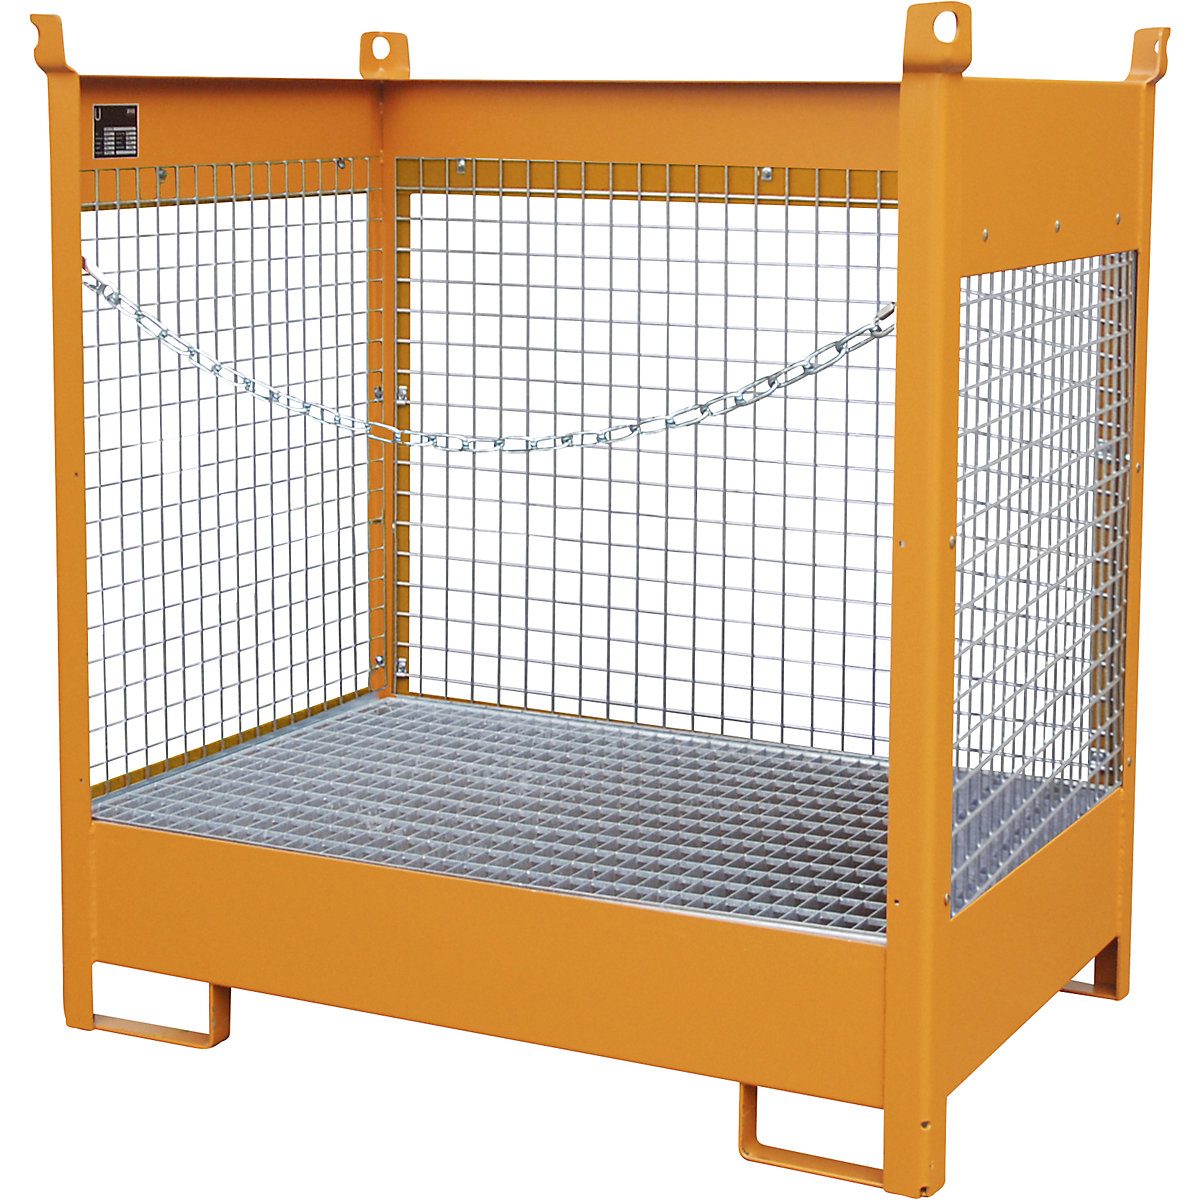 Skladiščna in transportna paleta s prestrezno kadico – eurokraft pro, 3 mrežaste stranice, za 2 soda prostornine 200 l, oranžne barve-19